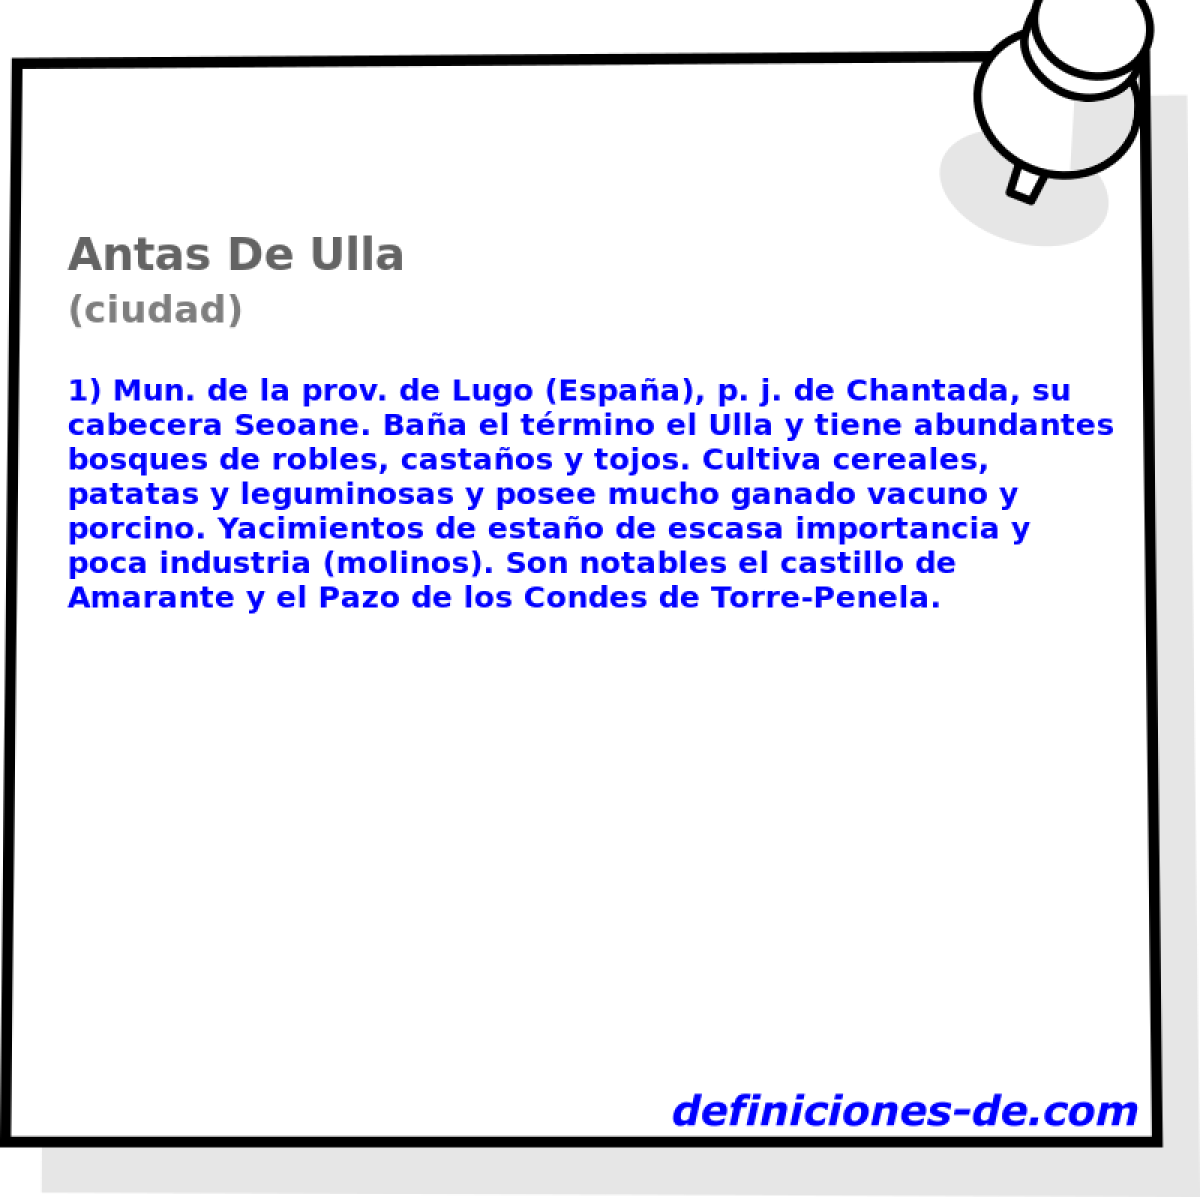 Antas De Ulla (ciudad)